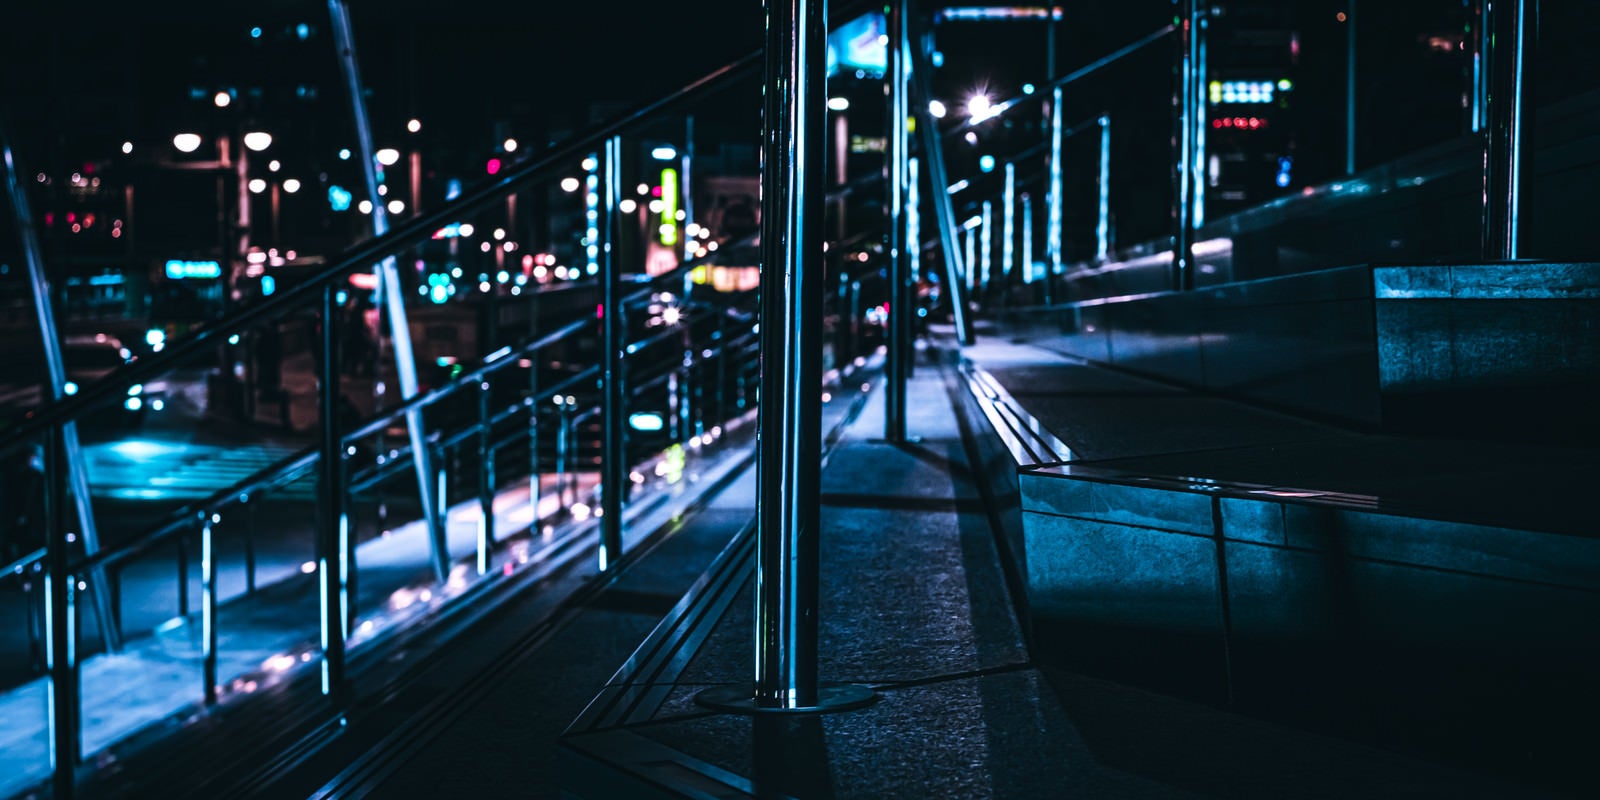 「夜の階段とステンレスポール」の写真